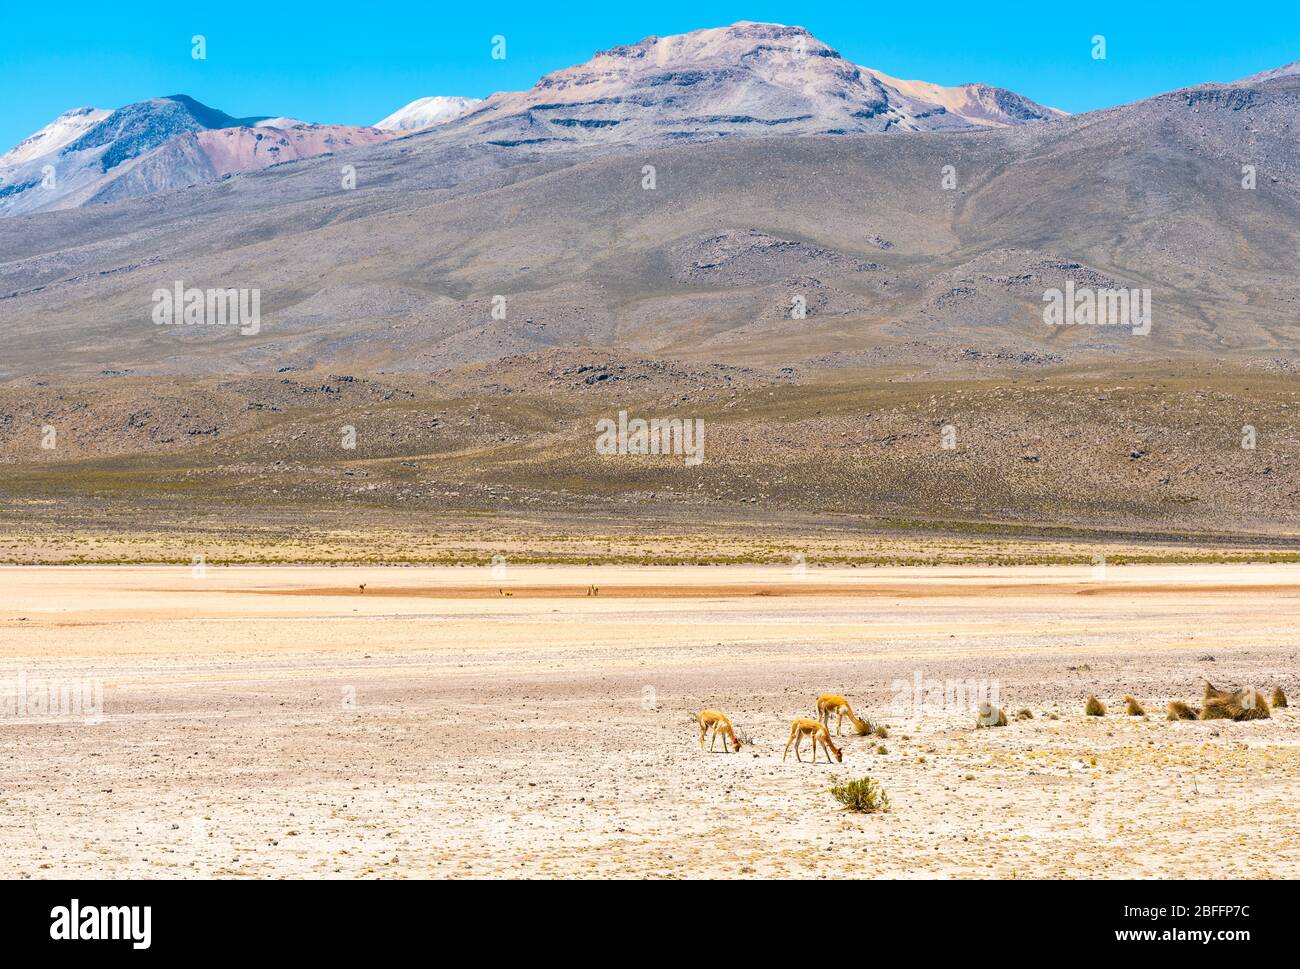 Drei vicuna (Vicugna vicugna) in einem Tal der Anden, Uyuni Salt Flat Region, Bolivien. Stockfoto